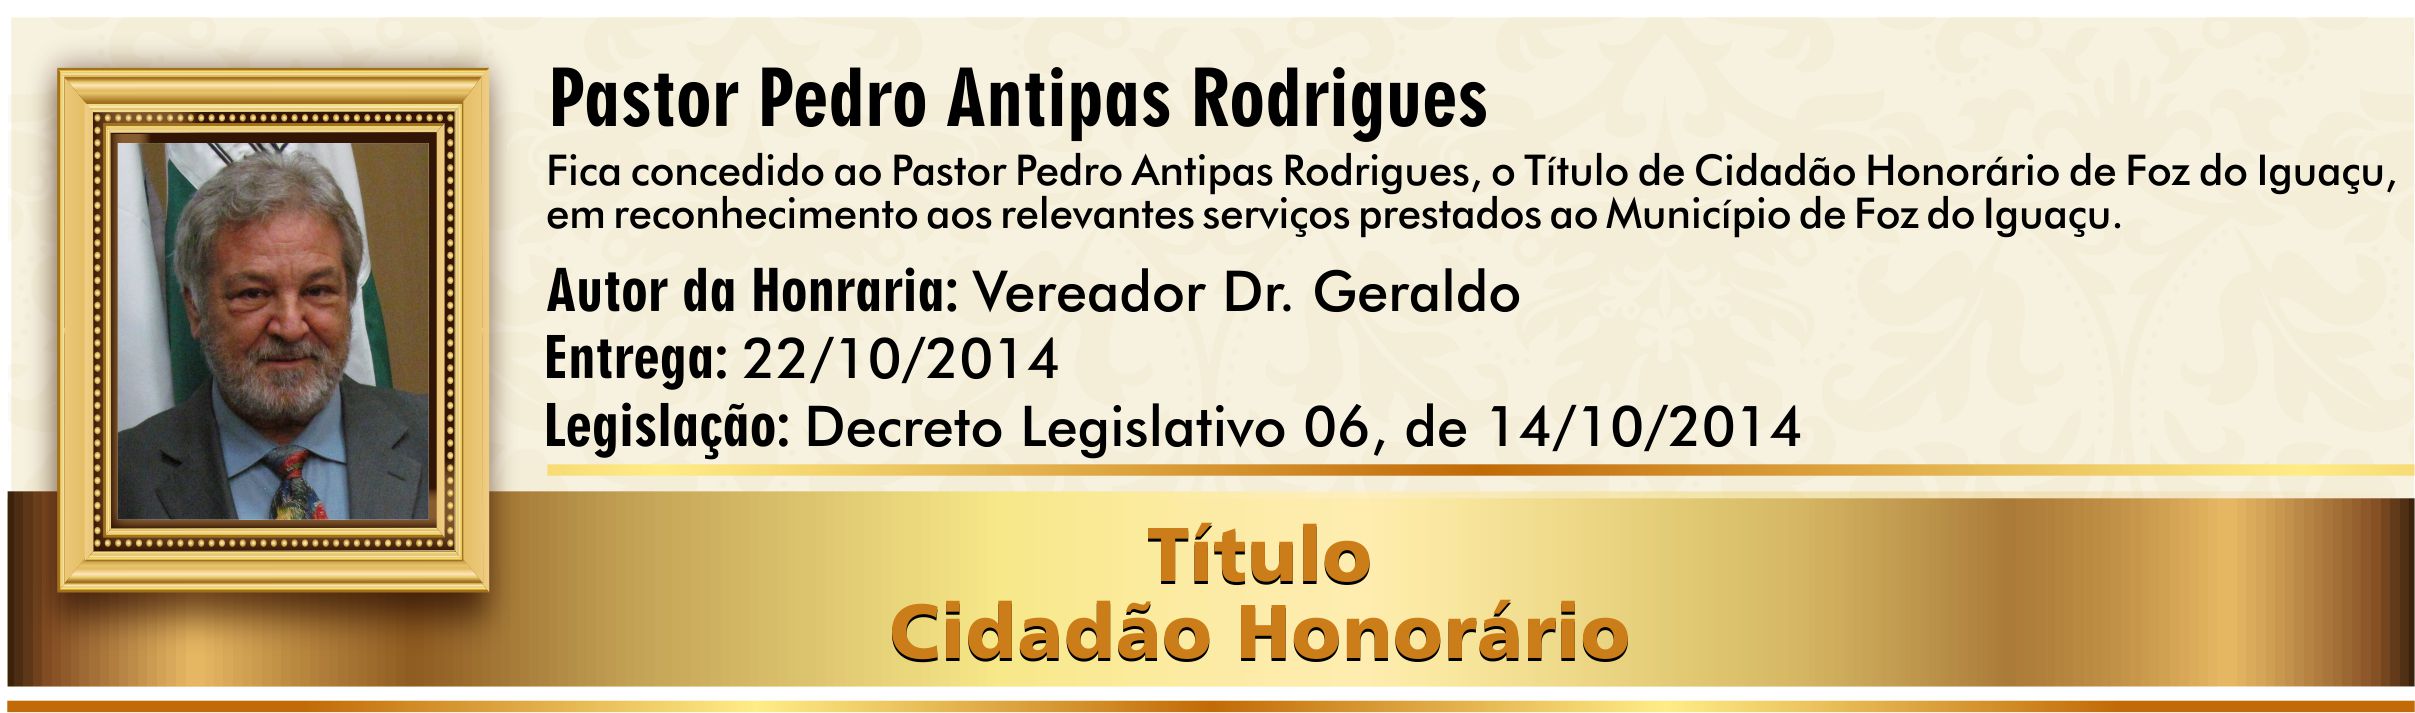 Pastor Pedro Antipas Rodrigues